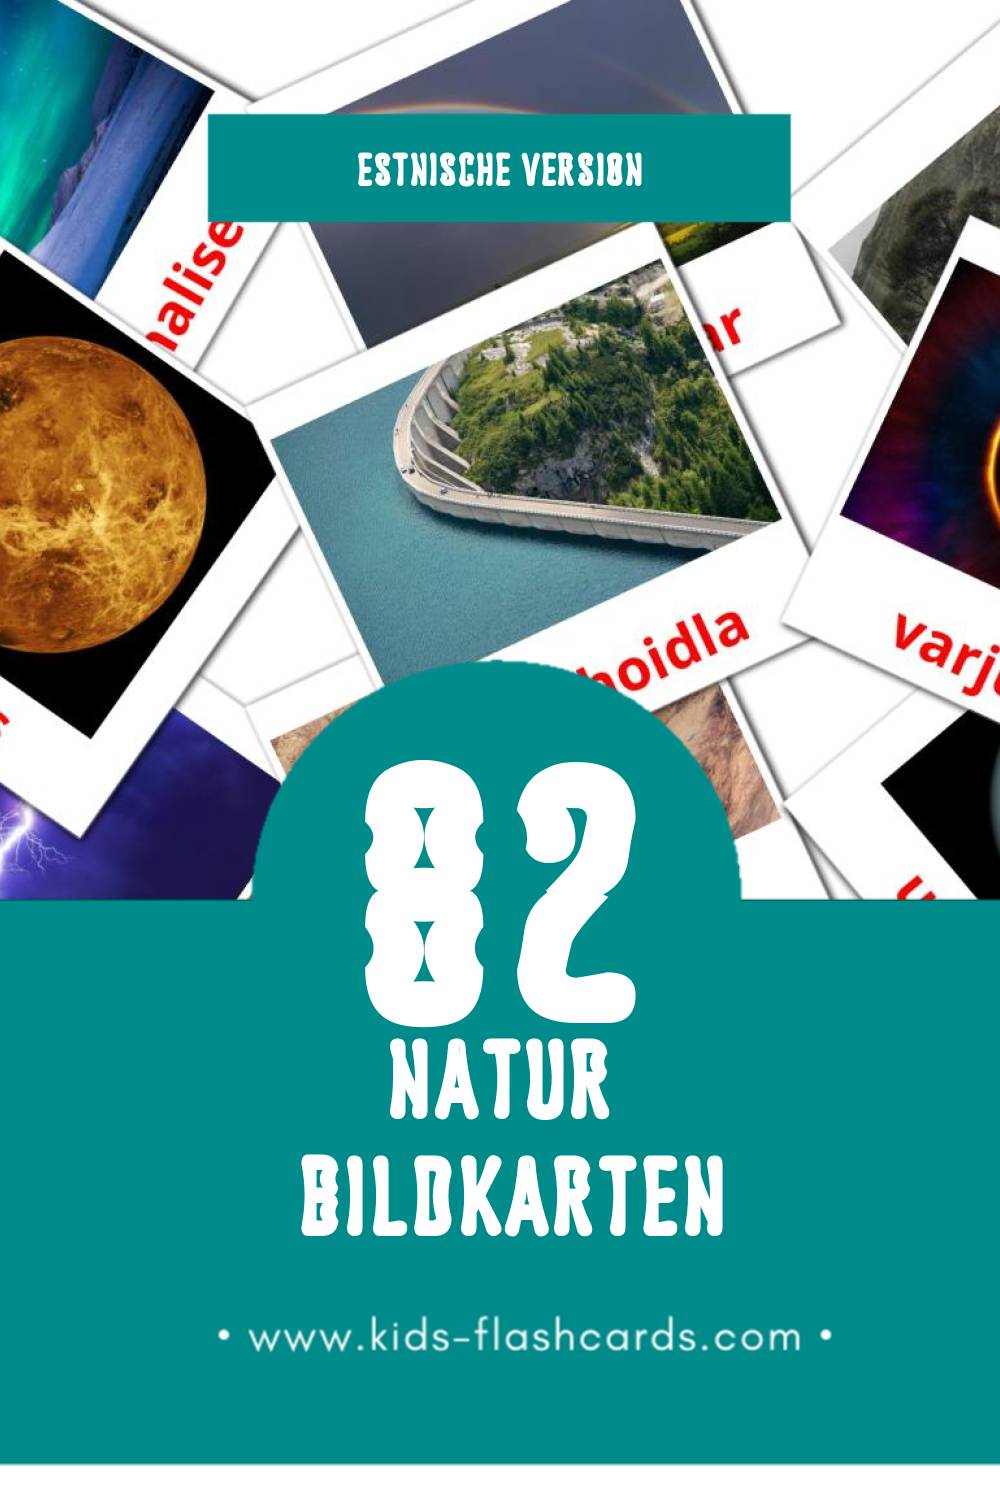 Visual Loodus Flashcards für Kleinkinder (82 Karten in Estnisch)